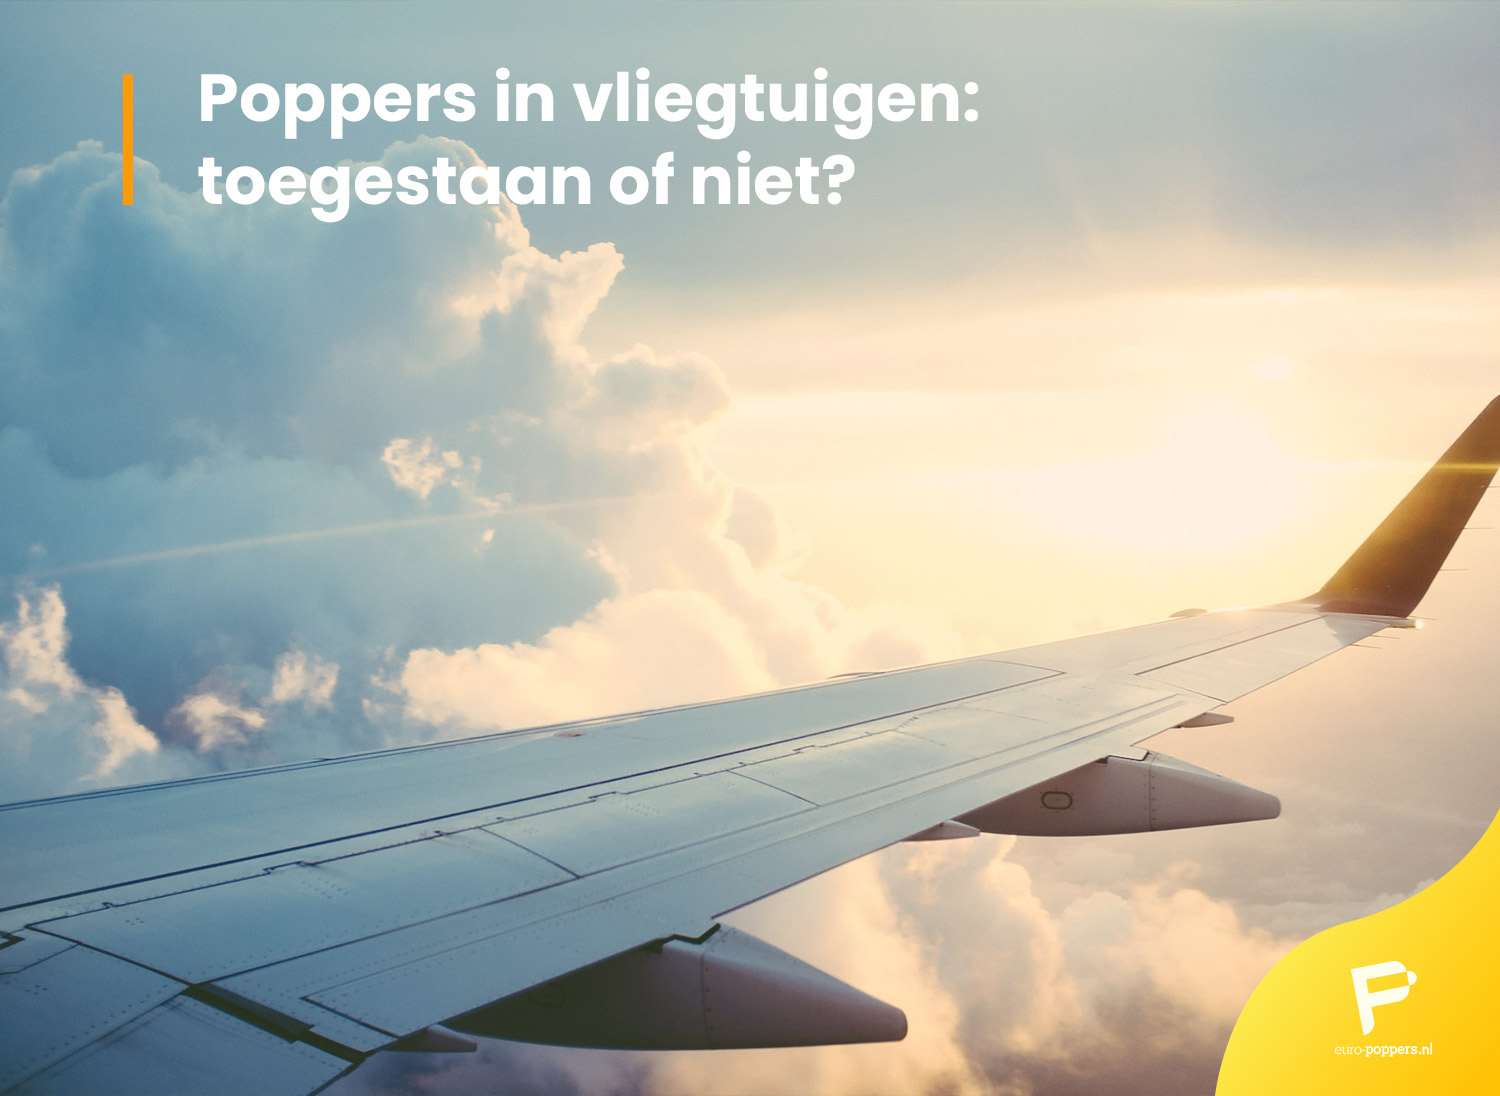 Je bekijkt nu Poppers in vliegtuigen:toegestaan of niet?